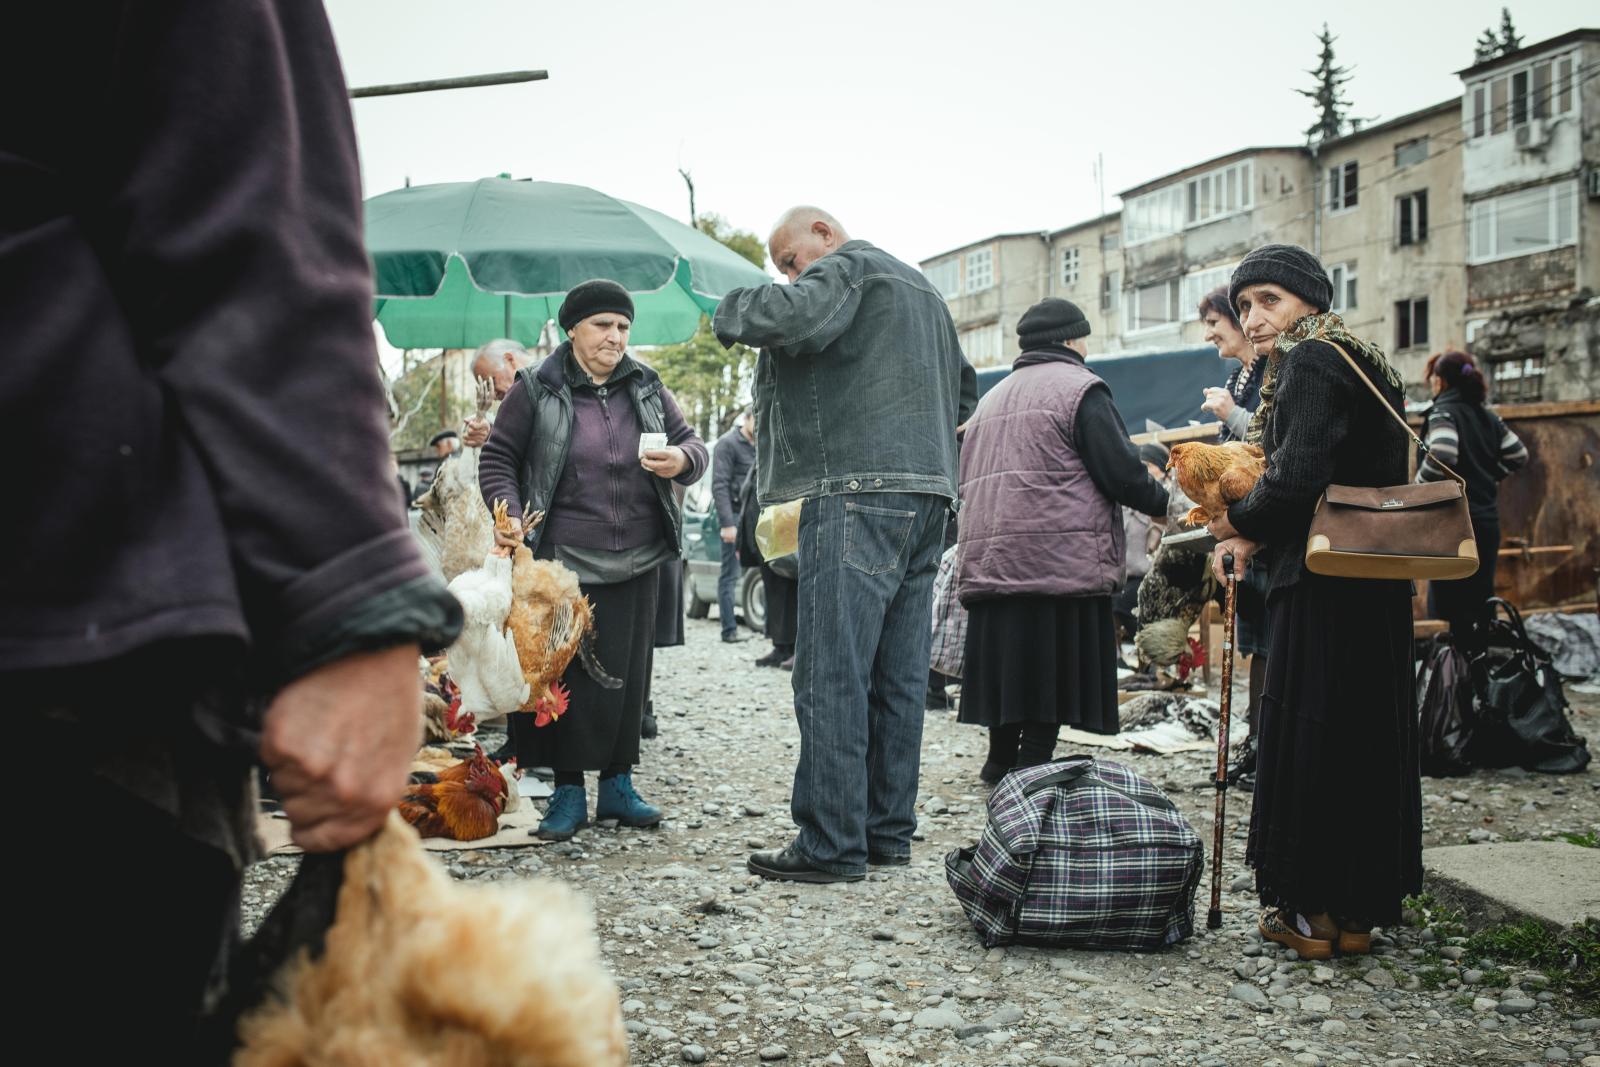 Экскурсии к спонсорам и невкусная еда: что разочаровывает туристов в Абхазии - image 1